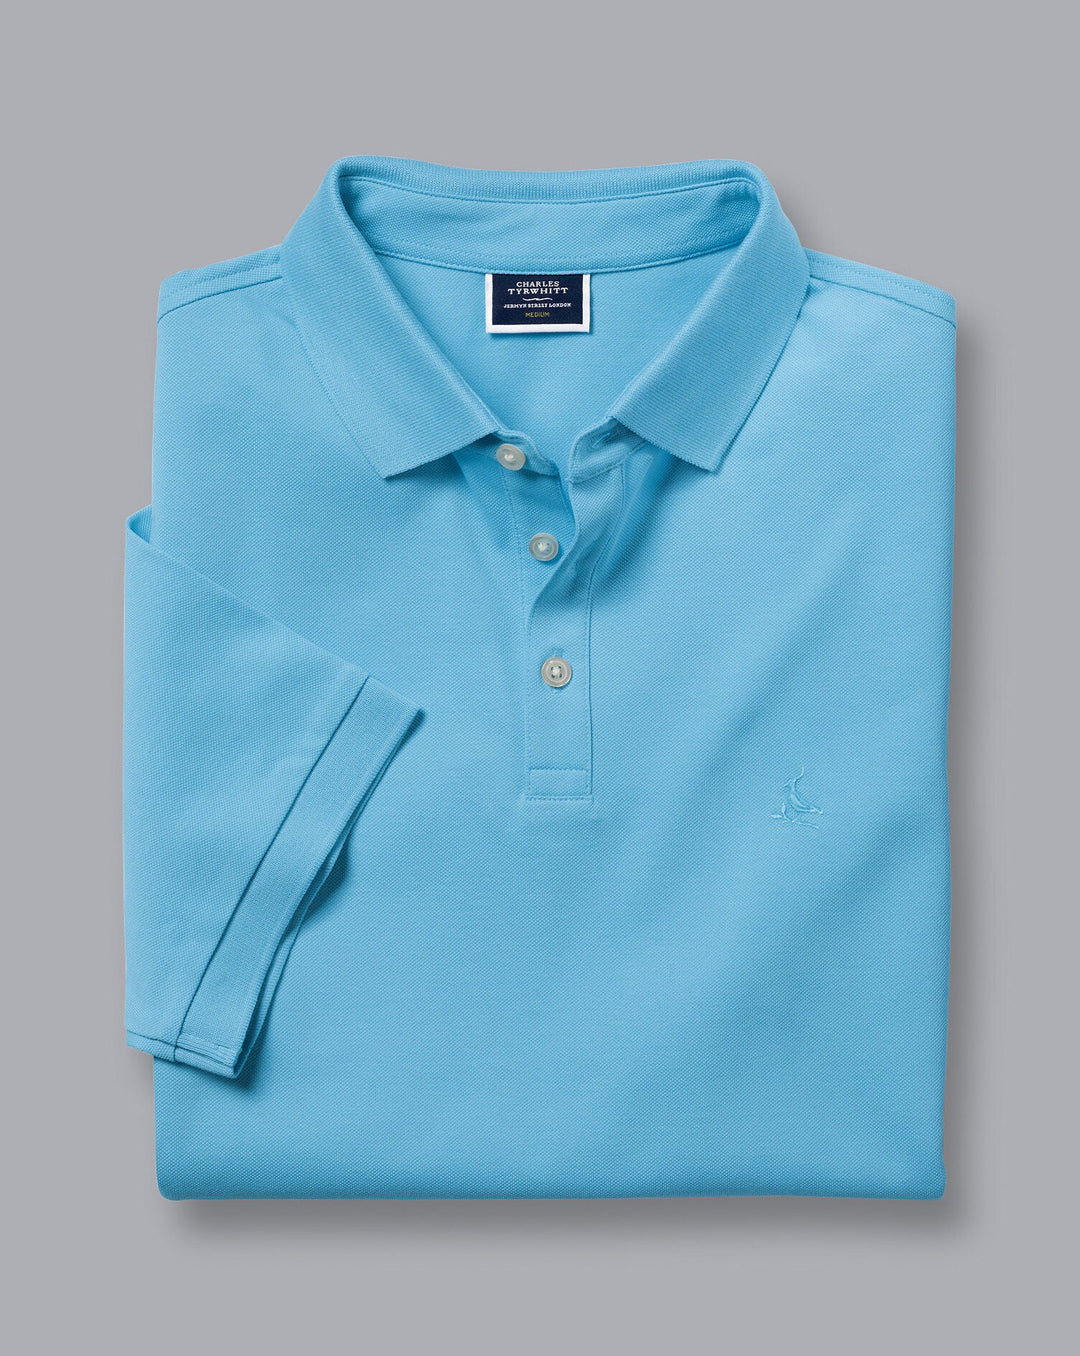 Charles Tyrwhitt Turquoise Solid Short Sleeve Cotton Tyrwhitt Pique Polo